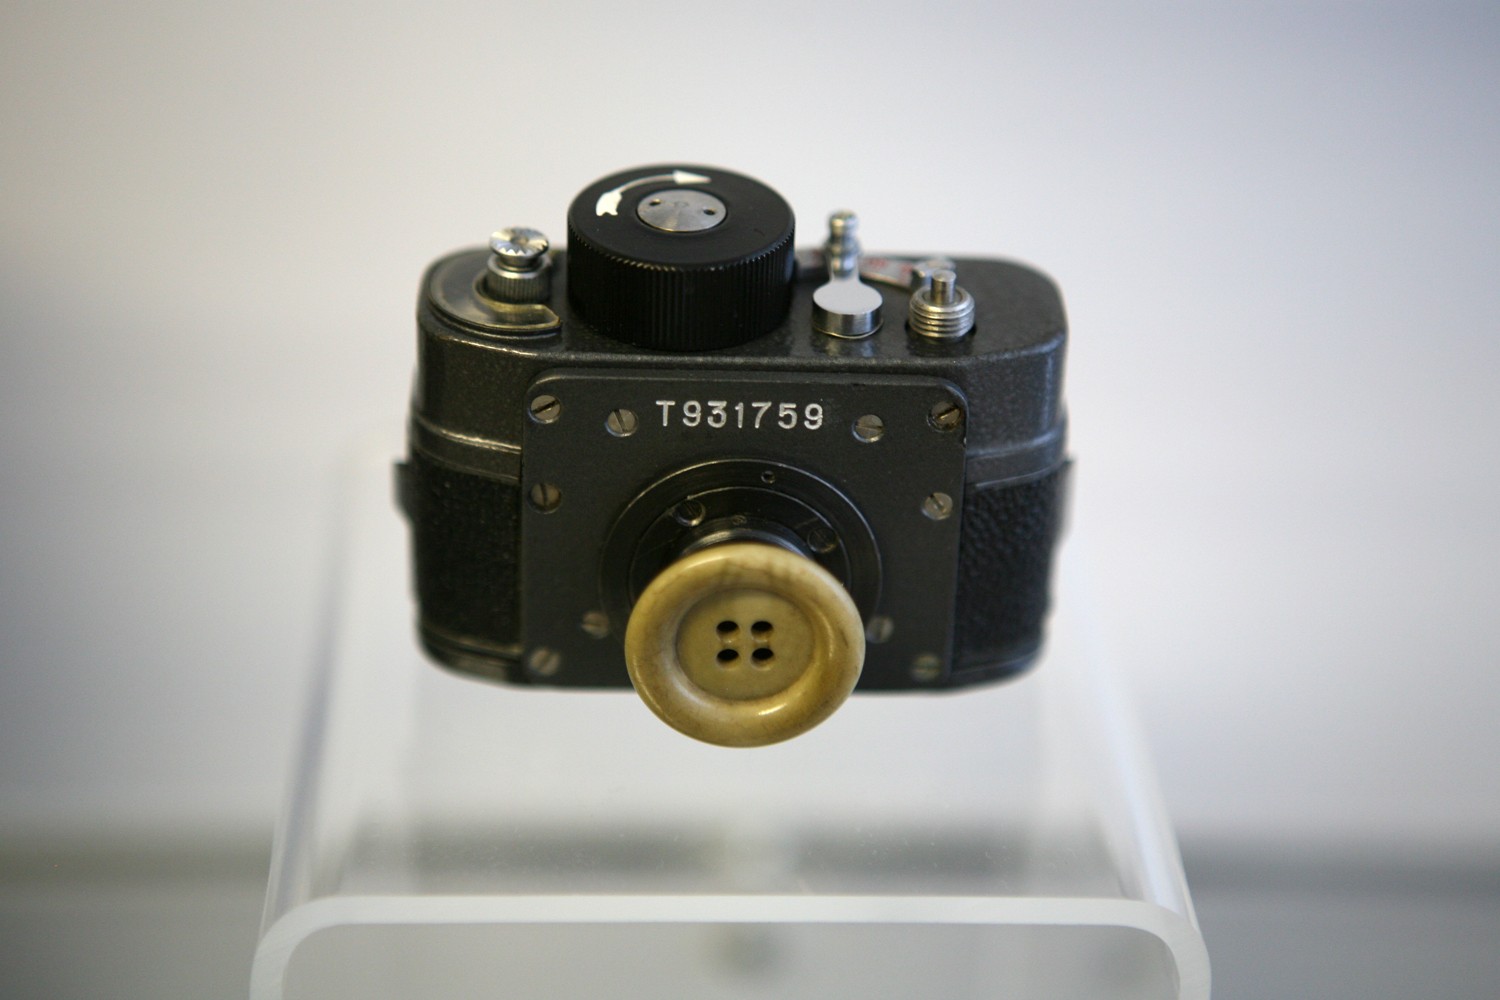 Una de les càmeres utilitzades per la Stasi